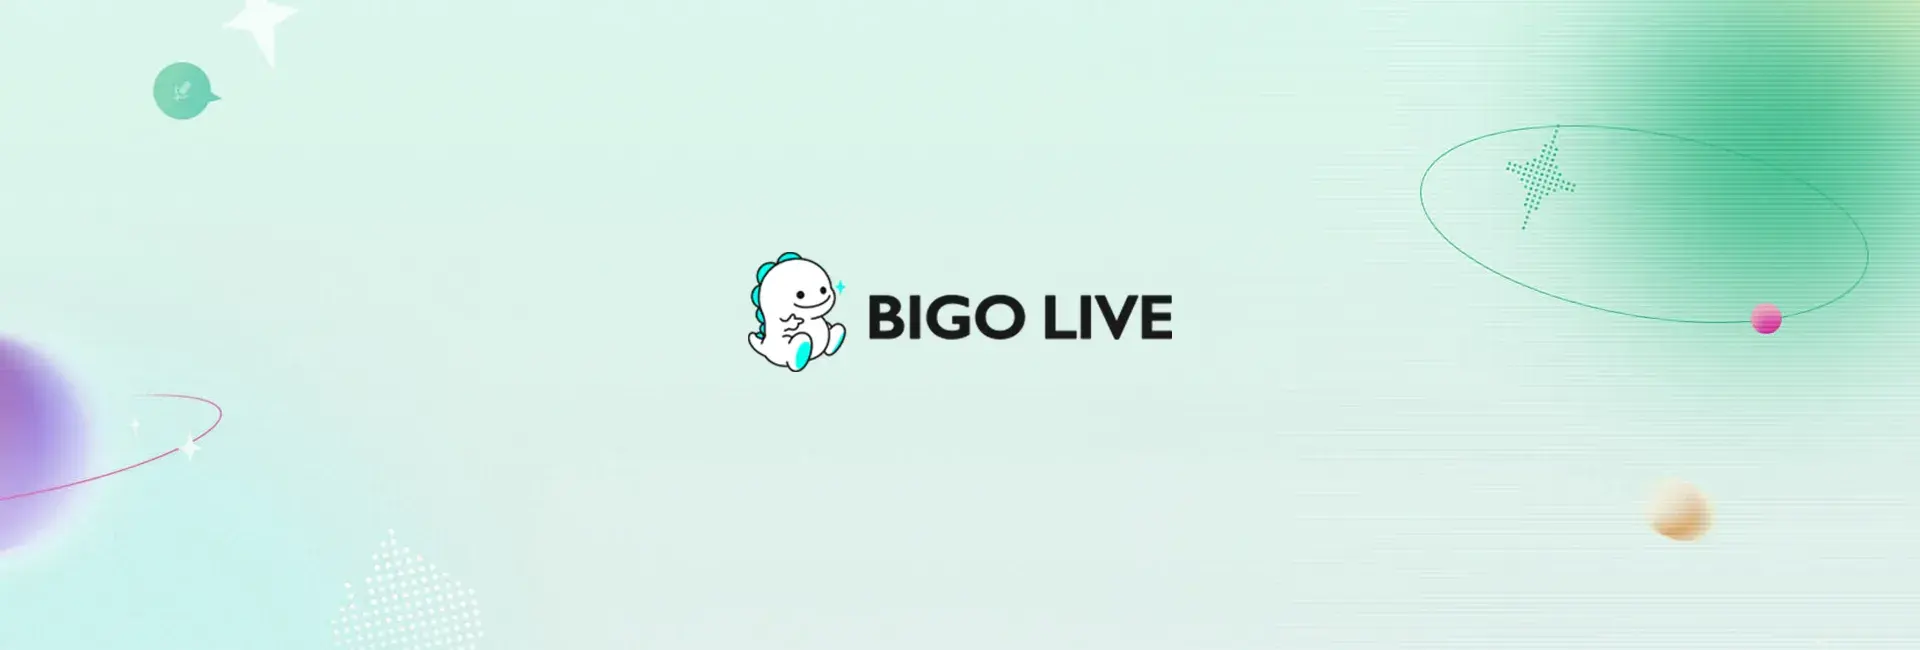 Bigo Live - 126 Diamonds (Global)